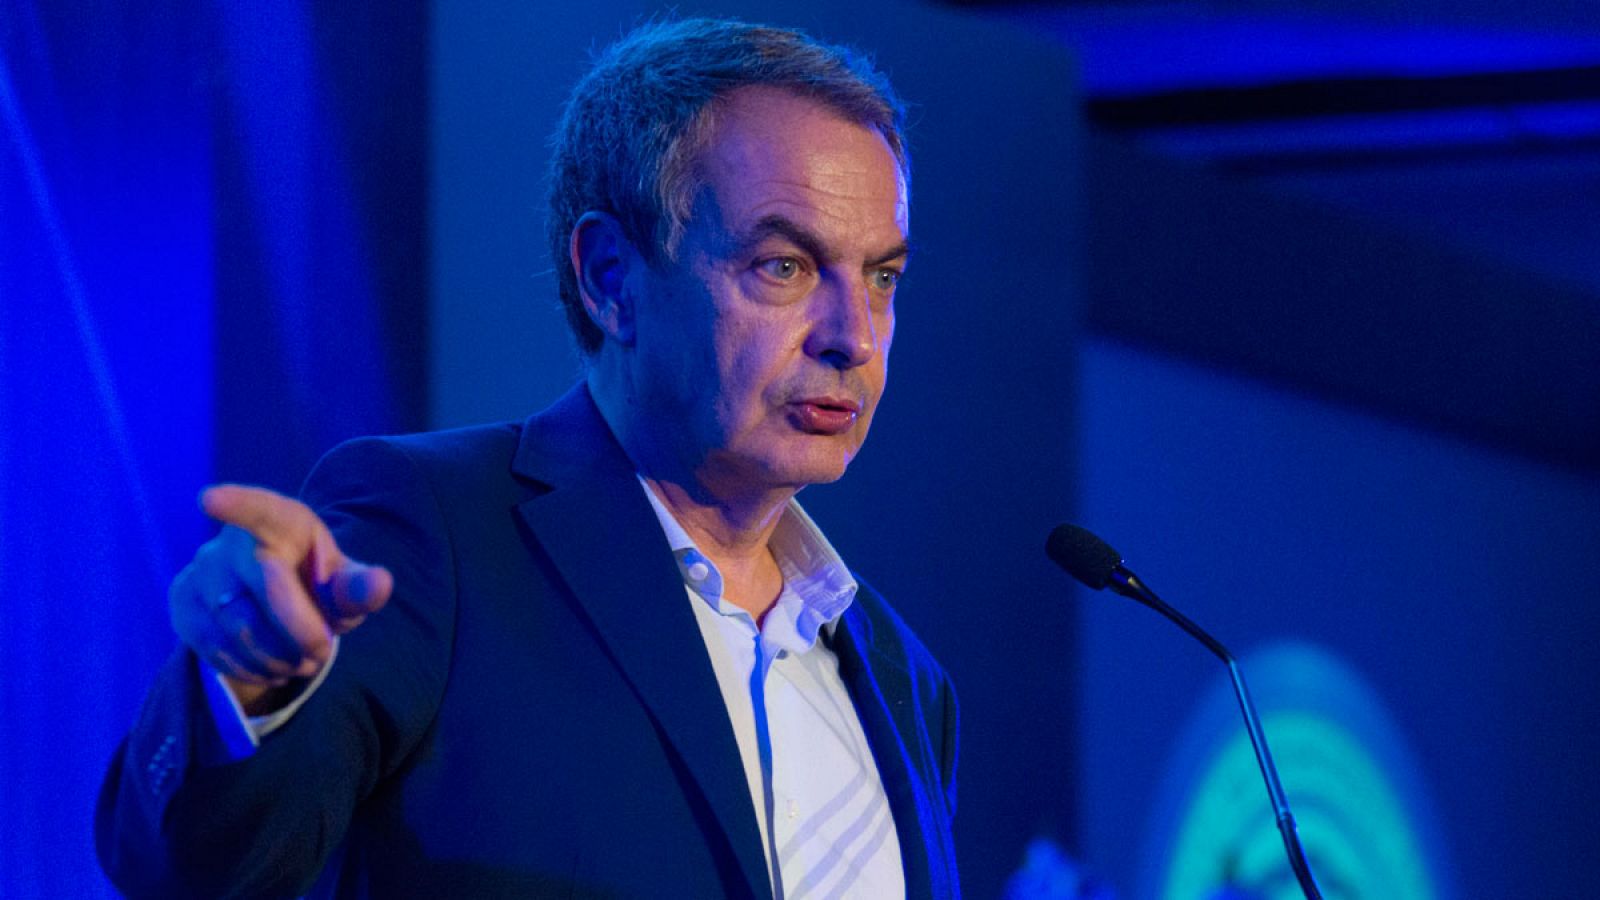 El expresidente del Gobierno, José Luis Rodríguez Zapatero,  habla durante una conferencia